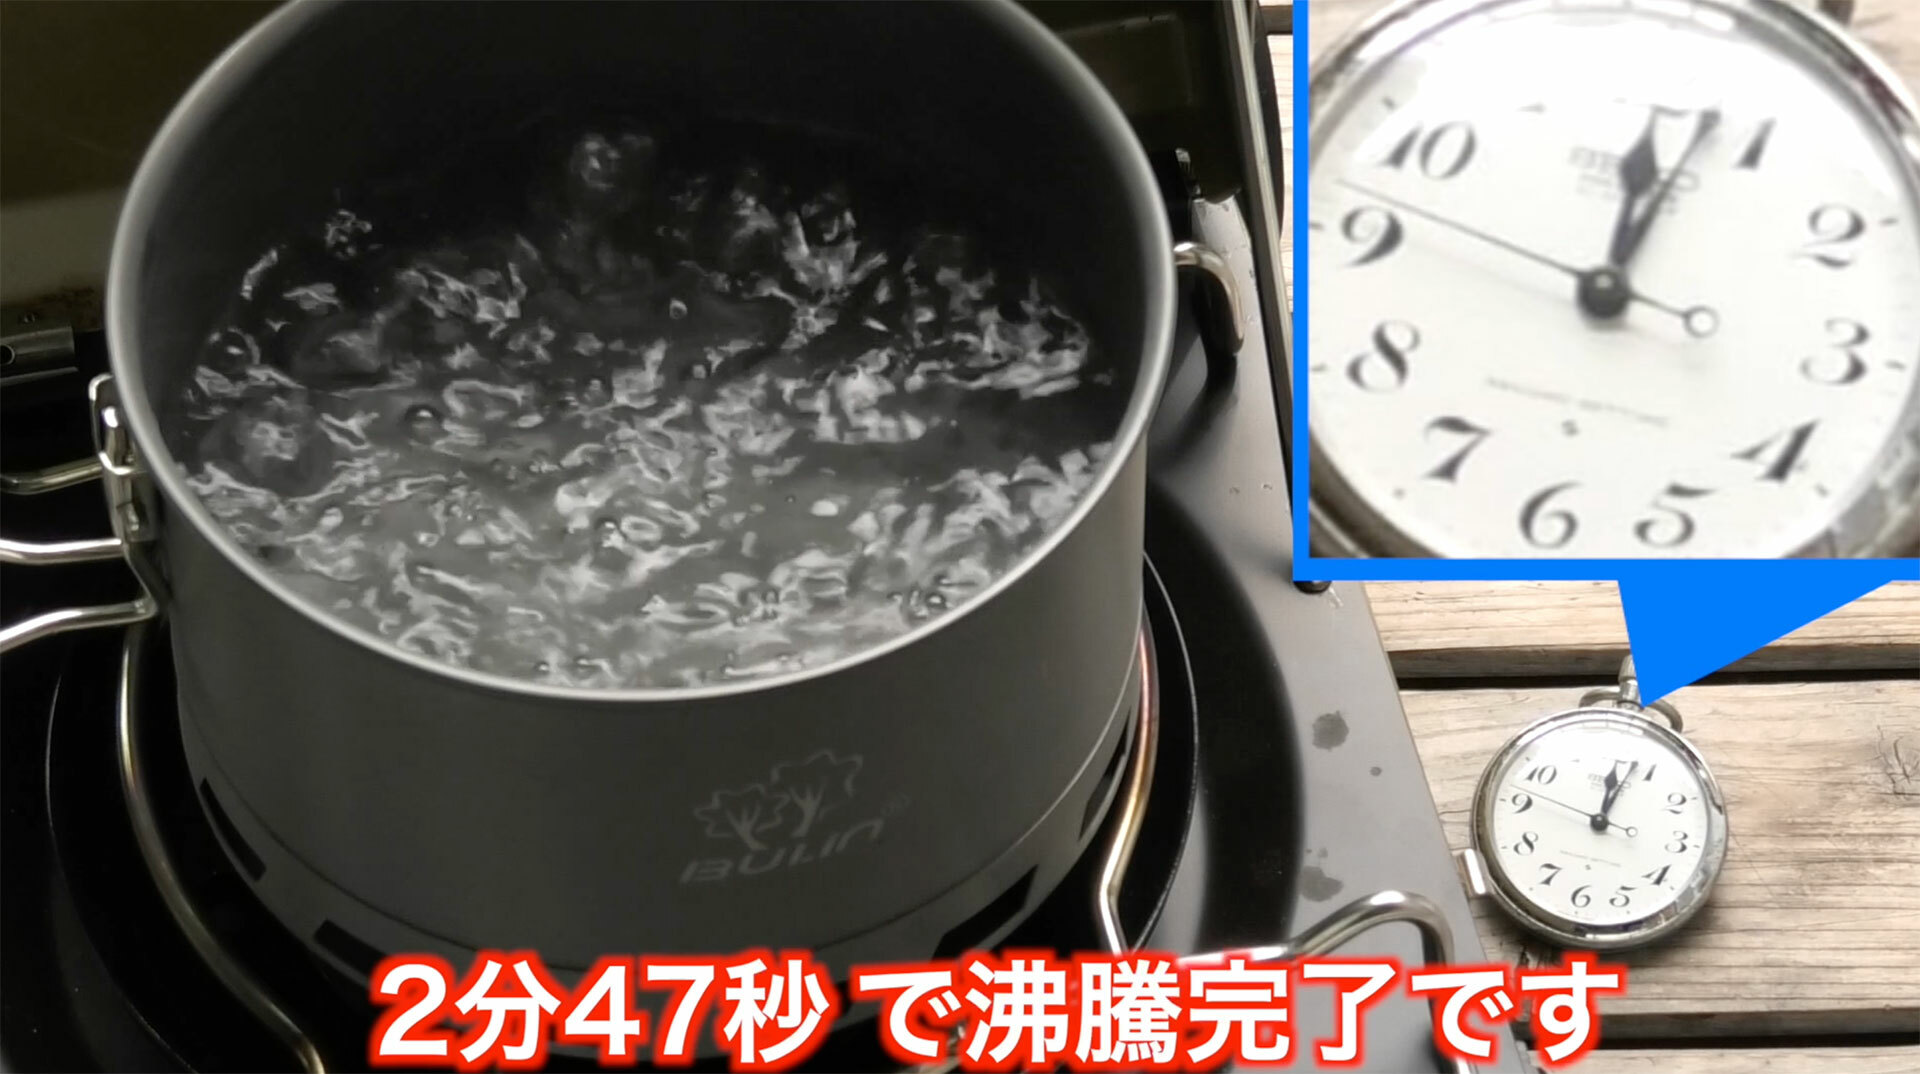 ヒートエクスチェンジャー付きクッカーは2分40秒で沸騰開始、2分47秒で煮沸状態。